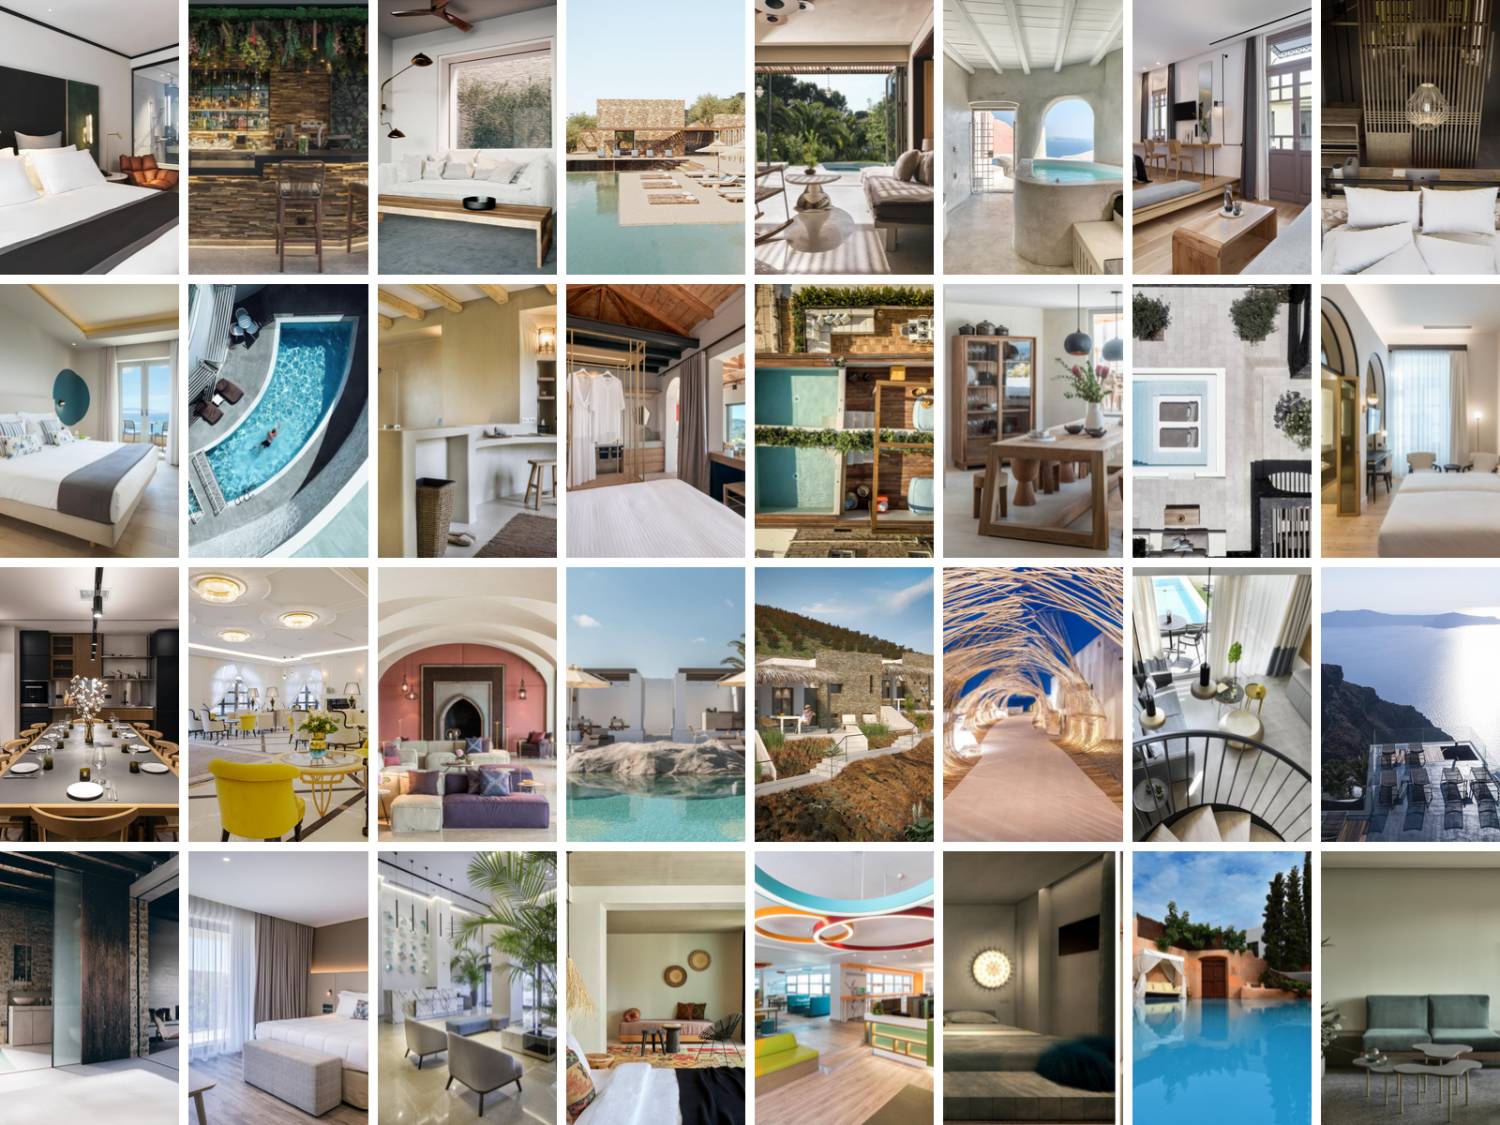 Τα 32 ξενοδοχεία που θα διαγωνιστούν στην ειδική βραδιά Απονομής των 100% Hotel Design Awards 2019